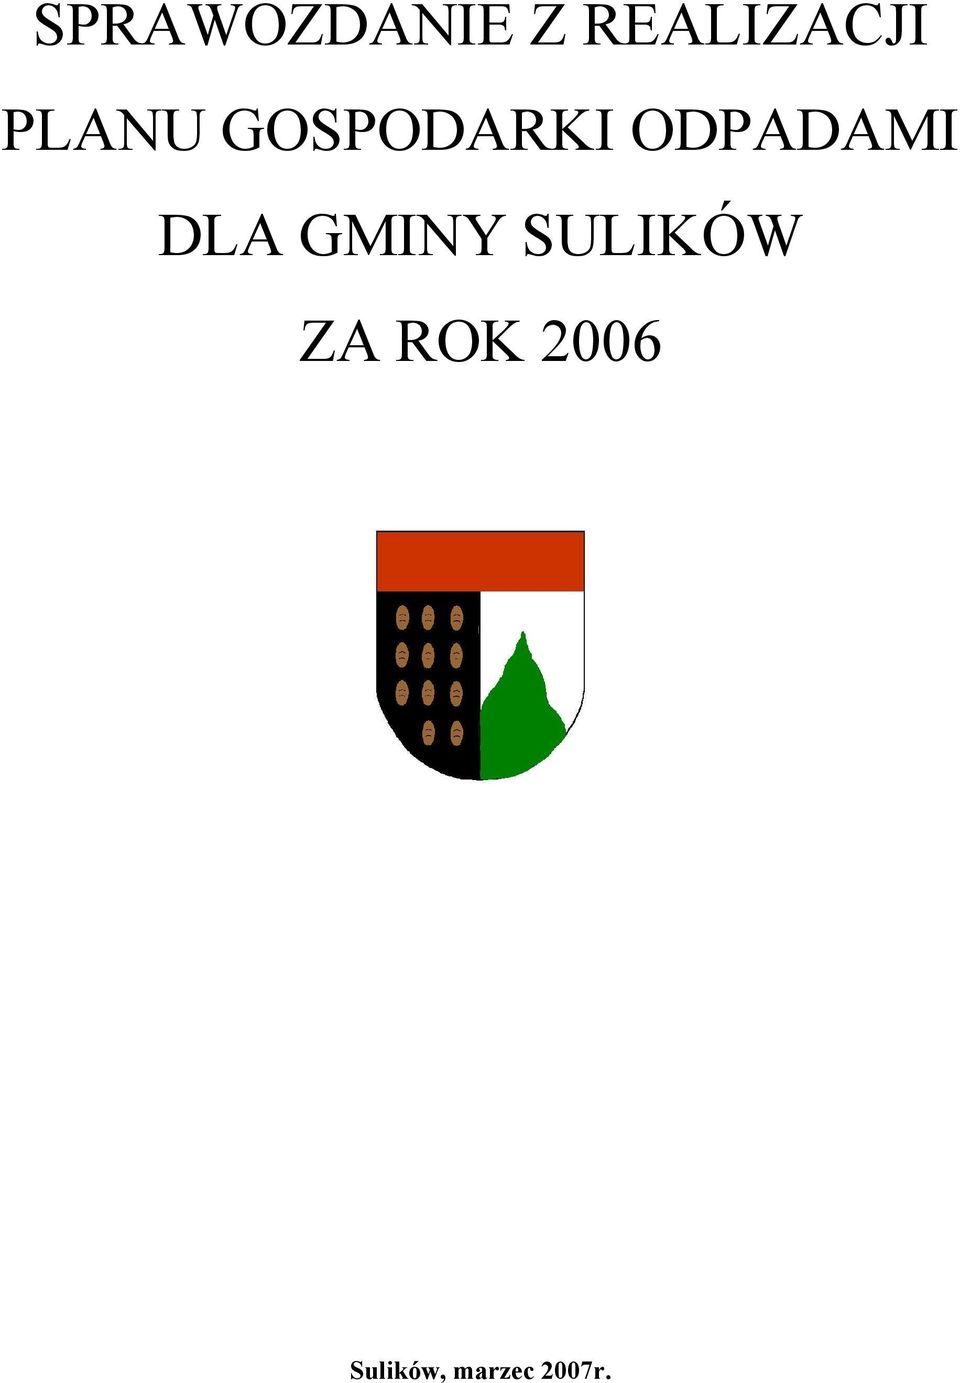 SULIKÓW ZA ROK 2006